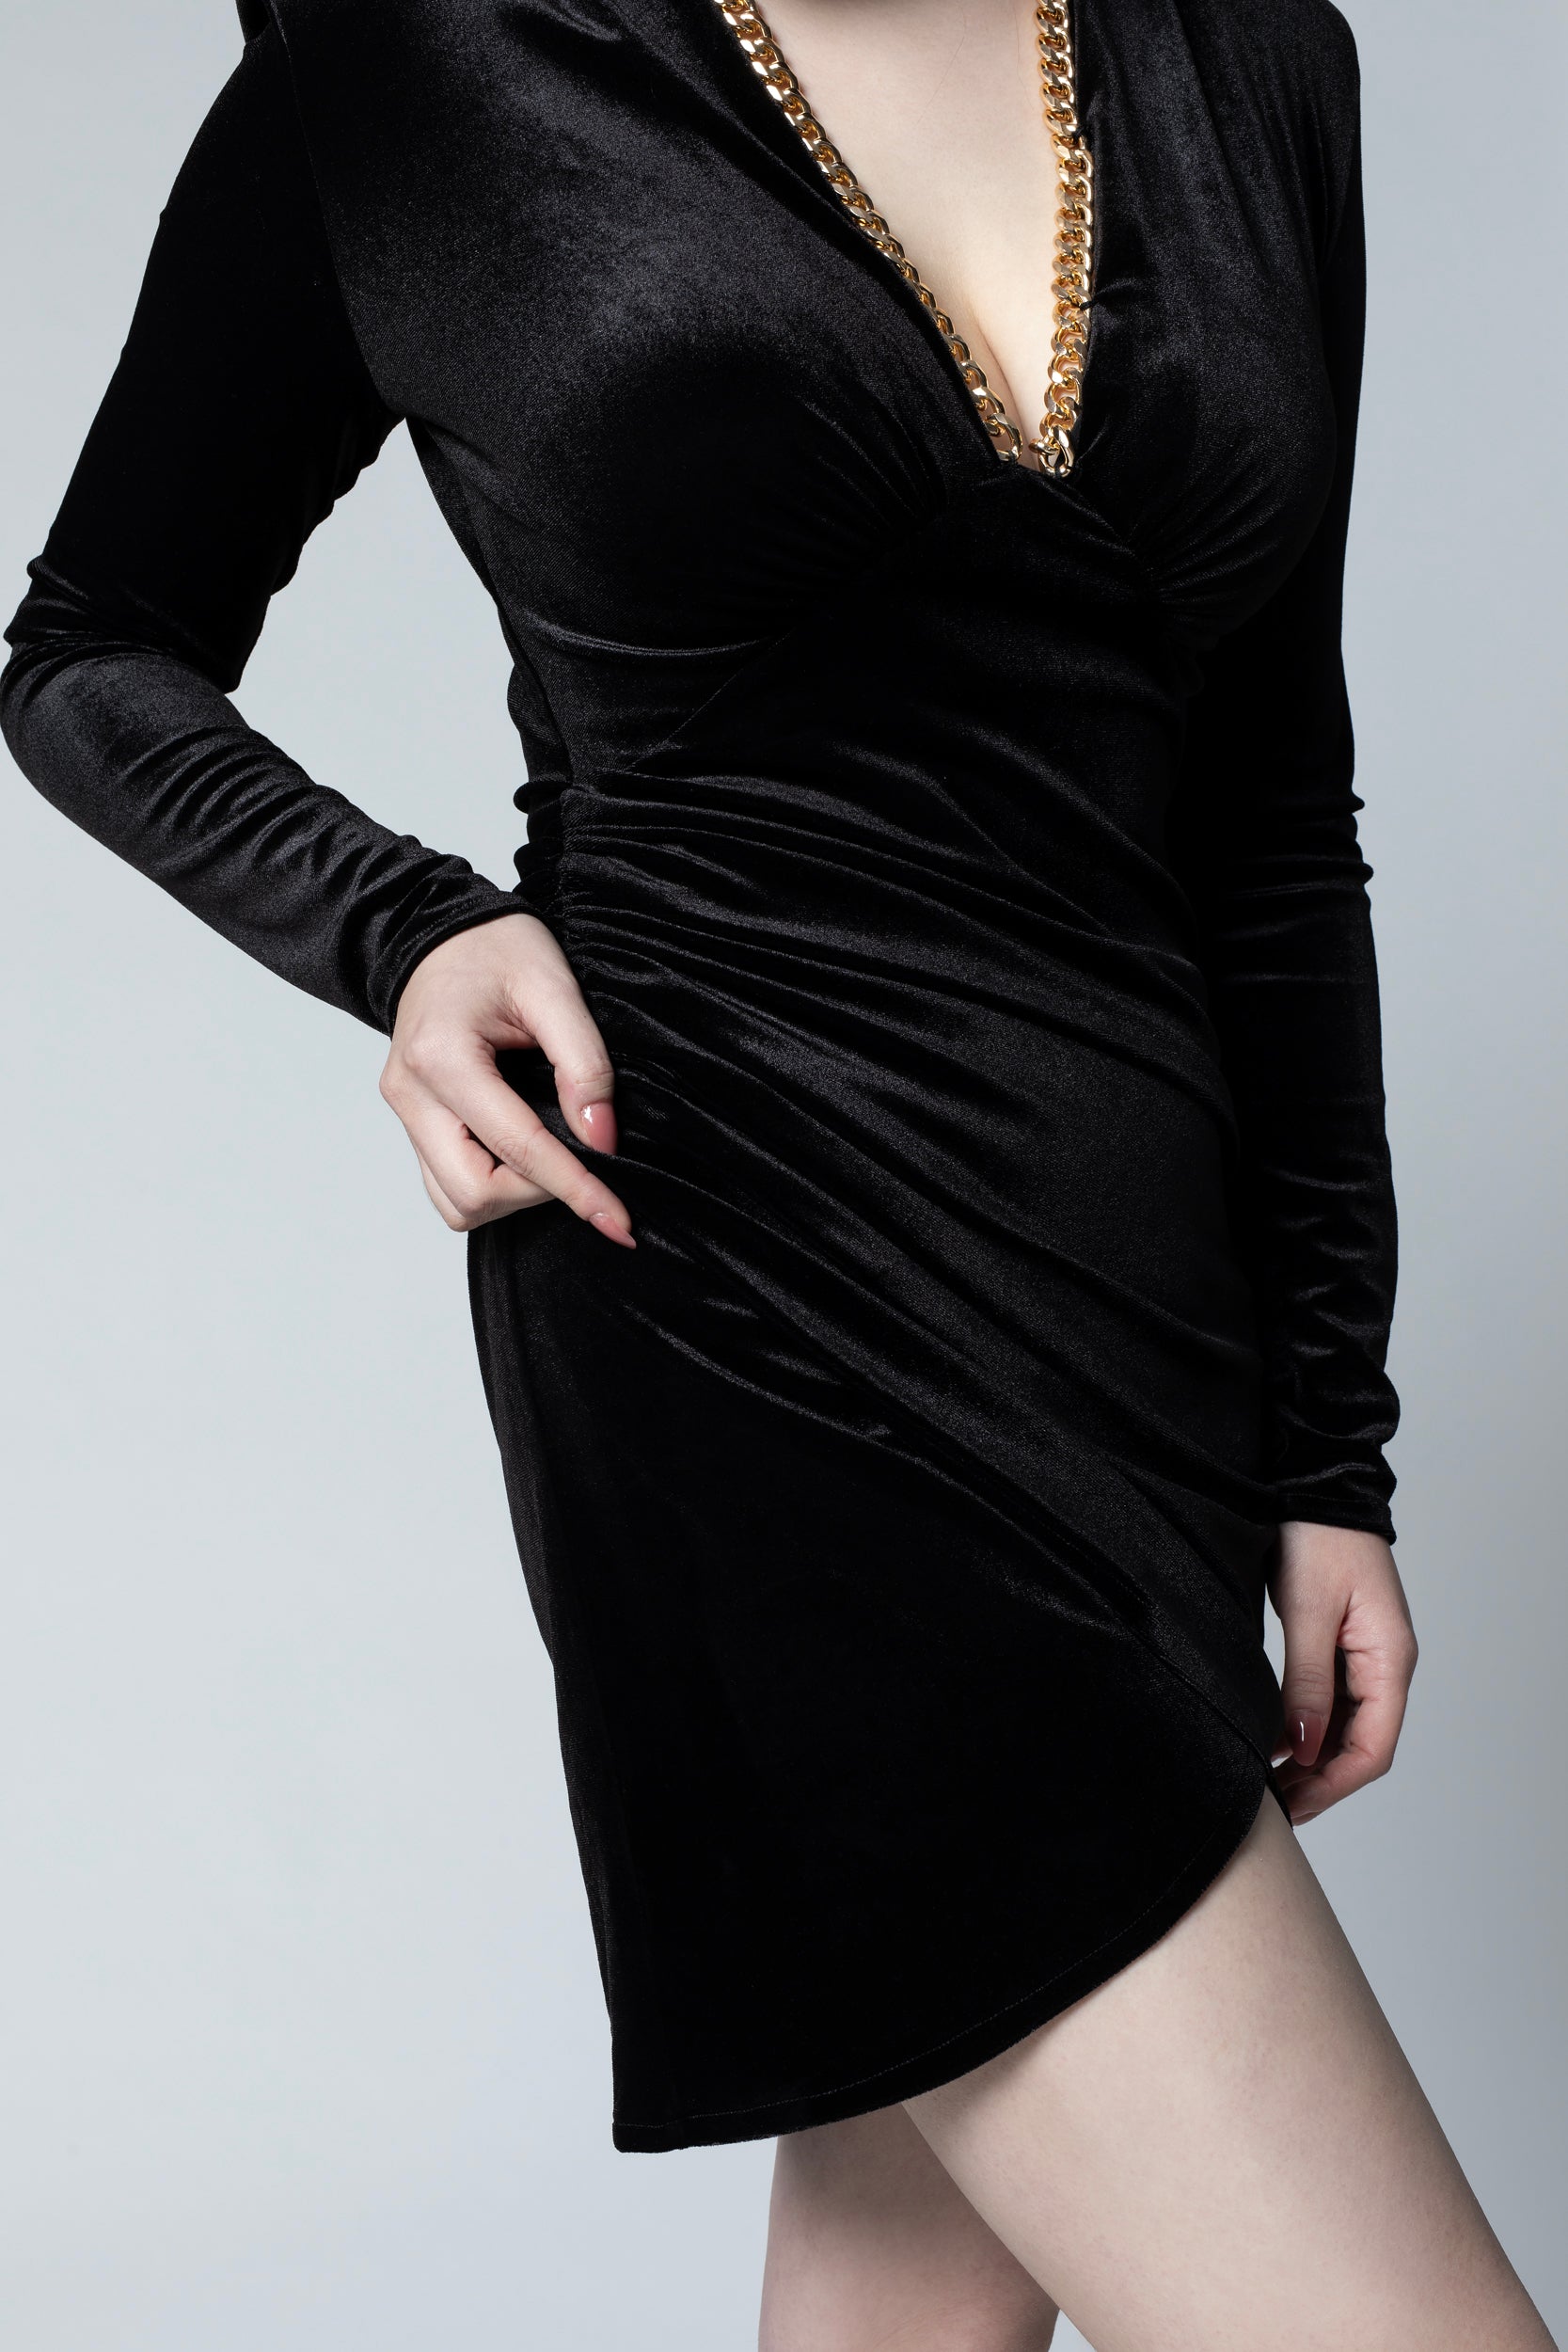 Black velvet chain dress